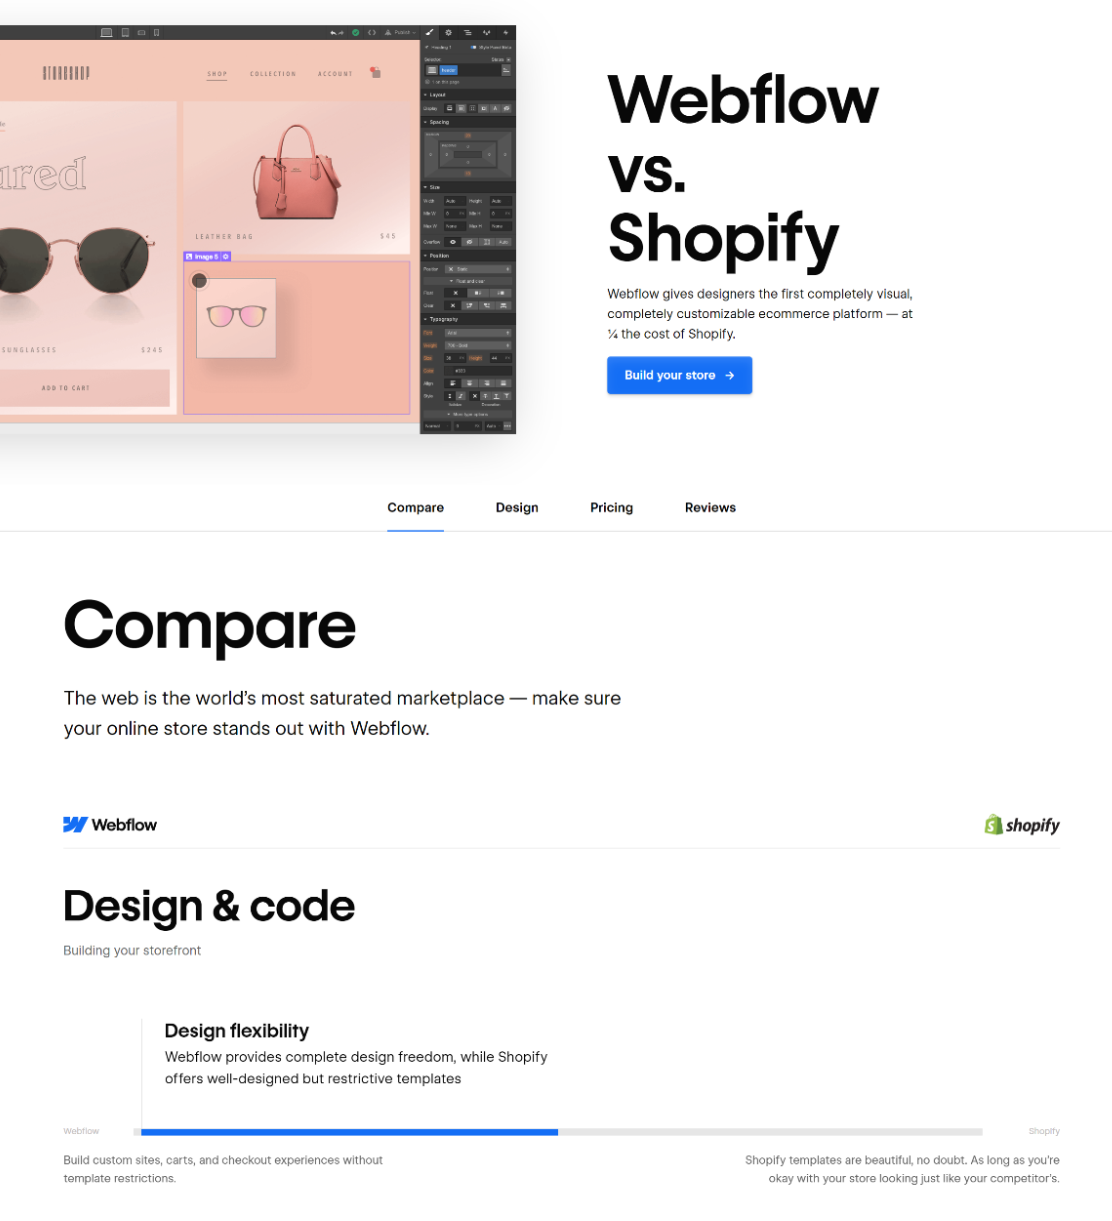 Webflow's "Webflow vs Shopify" comparison page